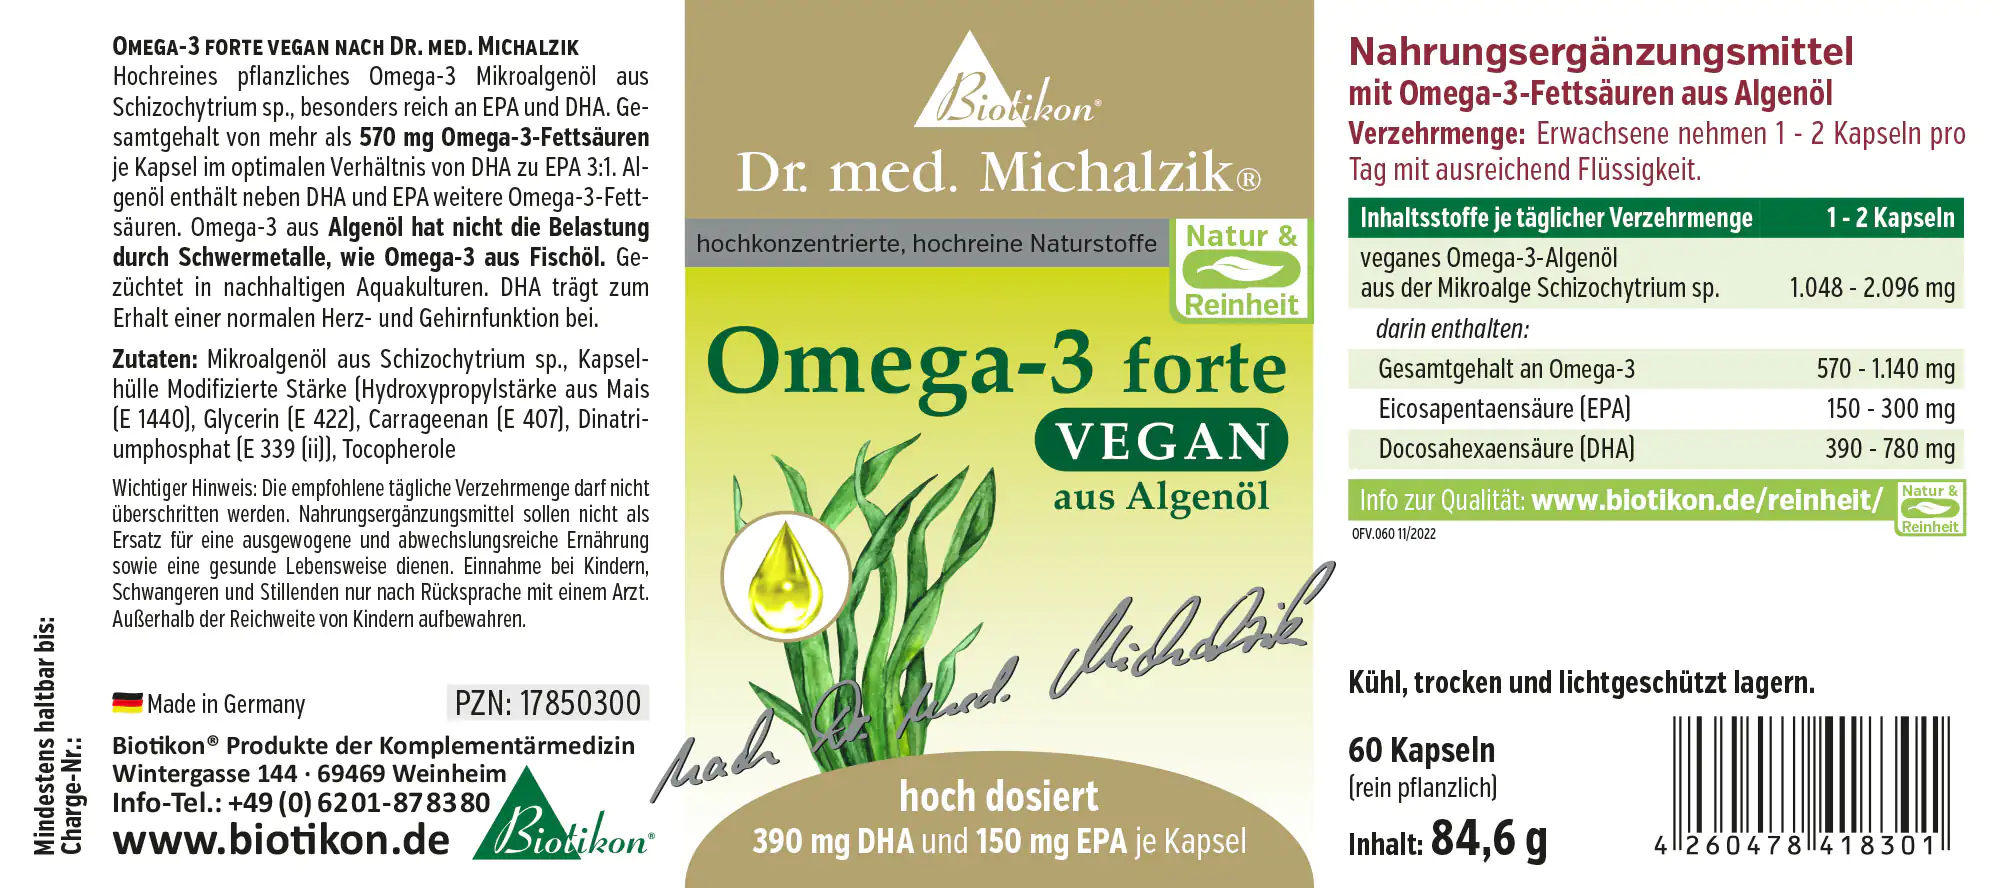 Omega-3 forte vegan - 60 capsules, violett glass